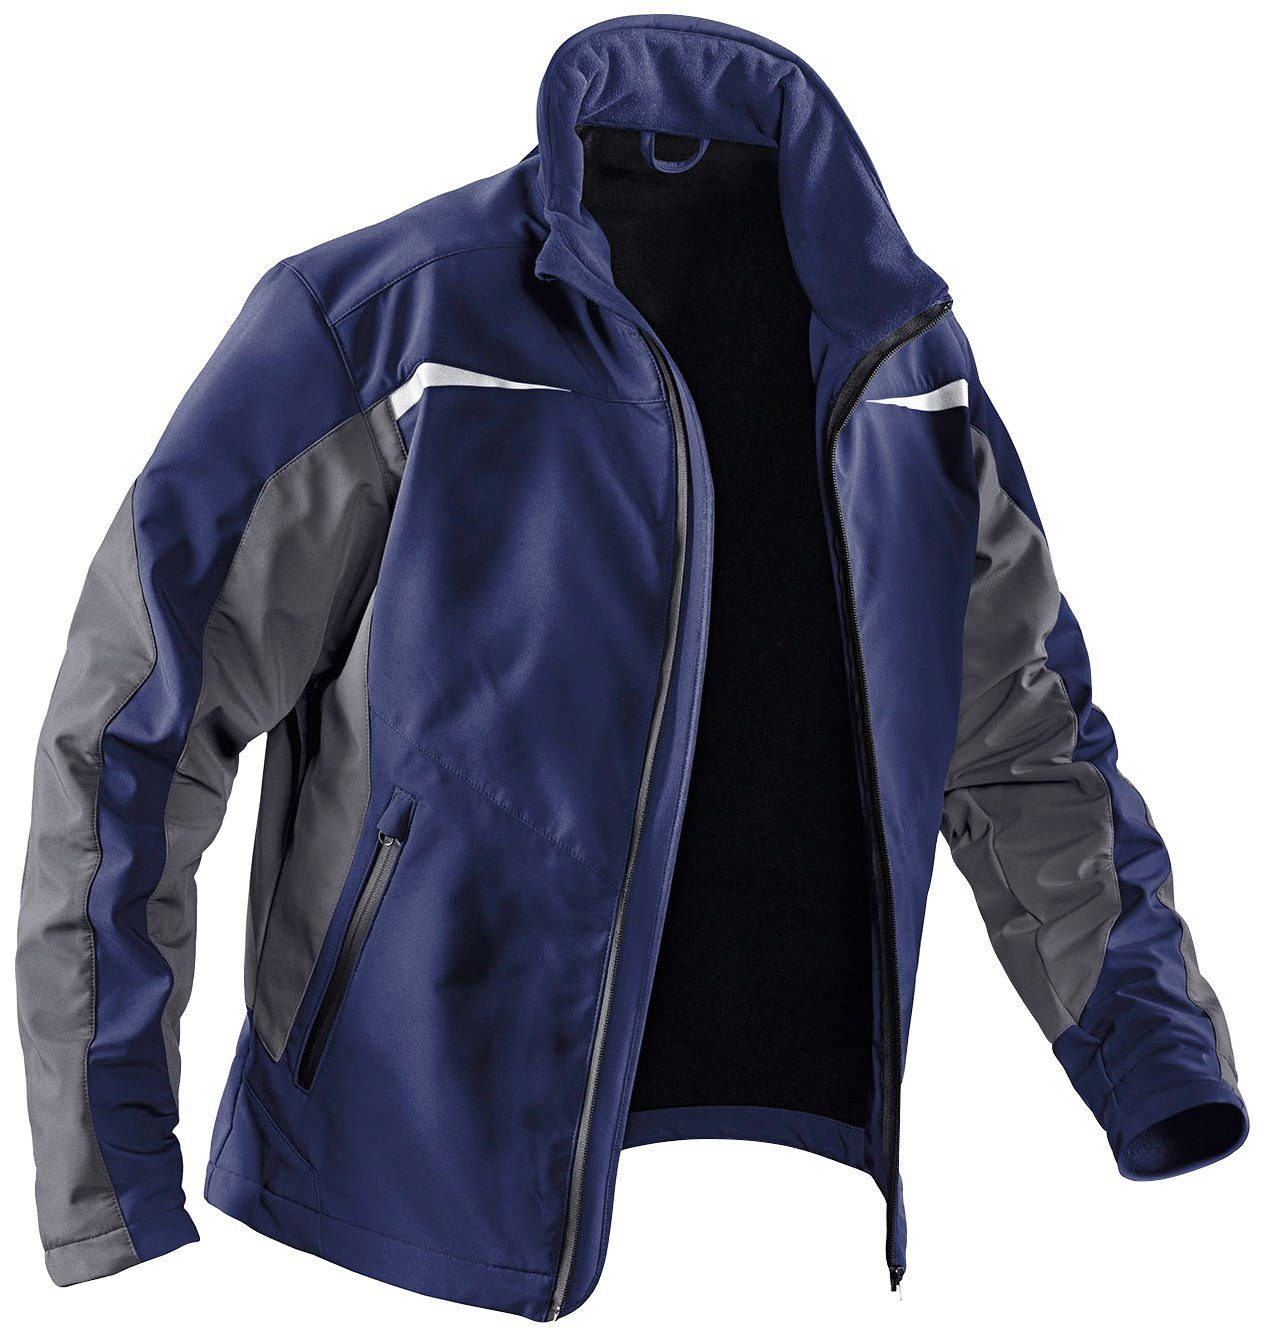 Kübler Arbeitsjacke Softshell Jacke mit 4 winddicht, Taschen, dunkelblau-anthrazit wasserabweisend